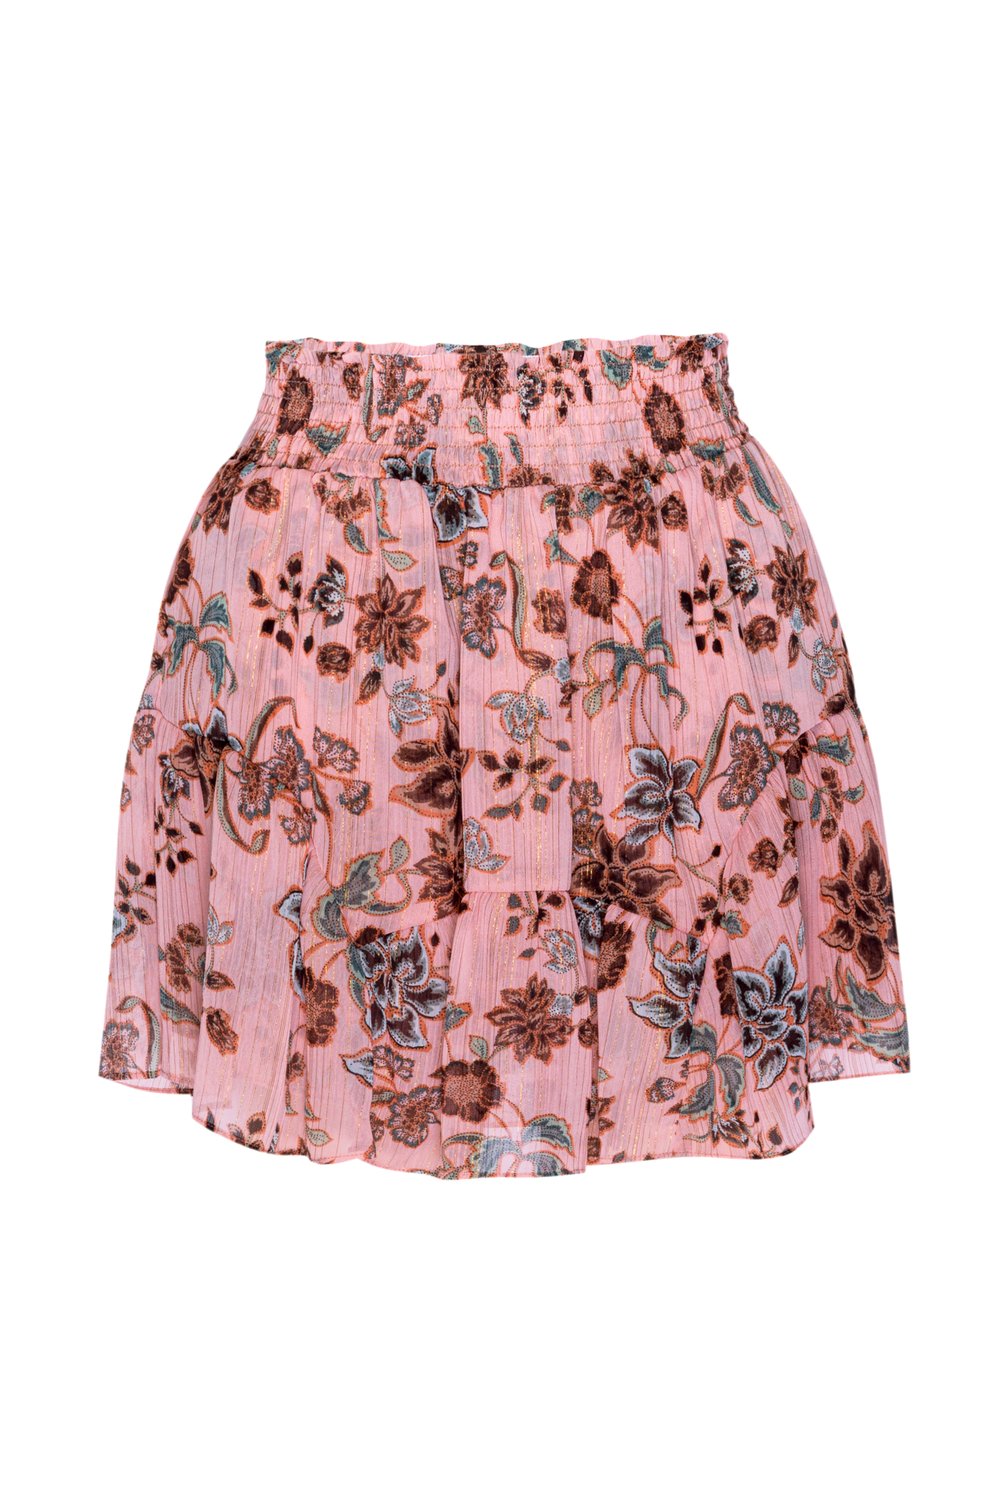 Misa - Roan Skirt in Choco Rose Floral